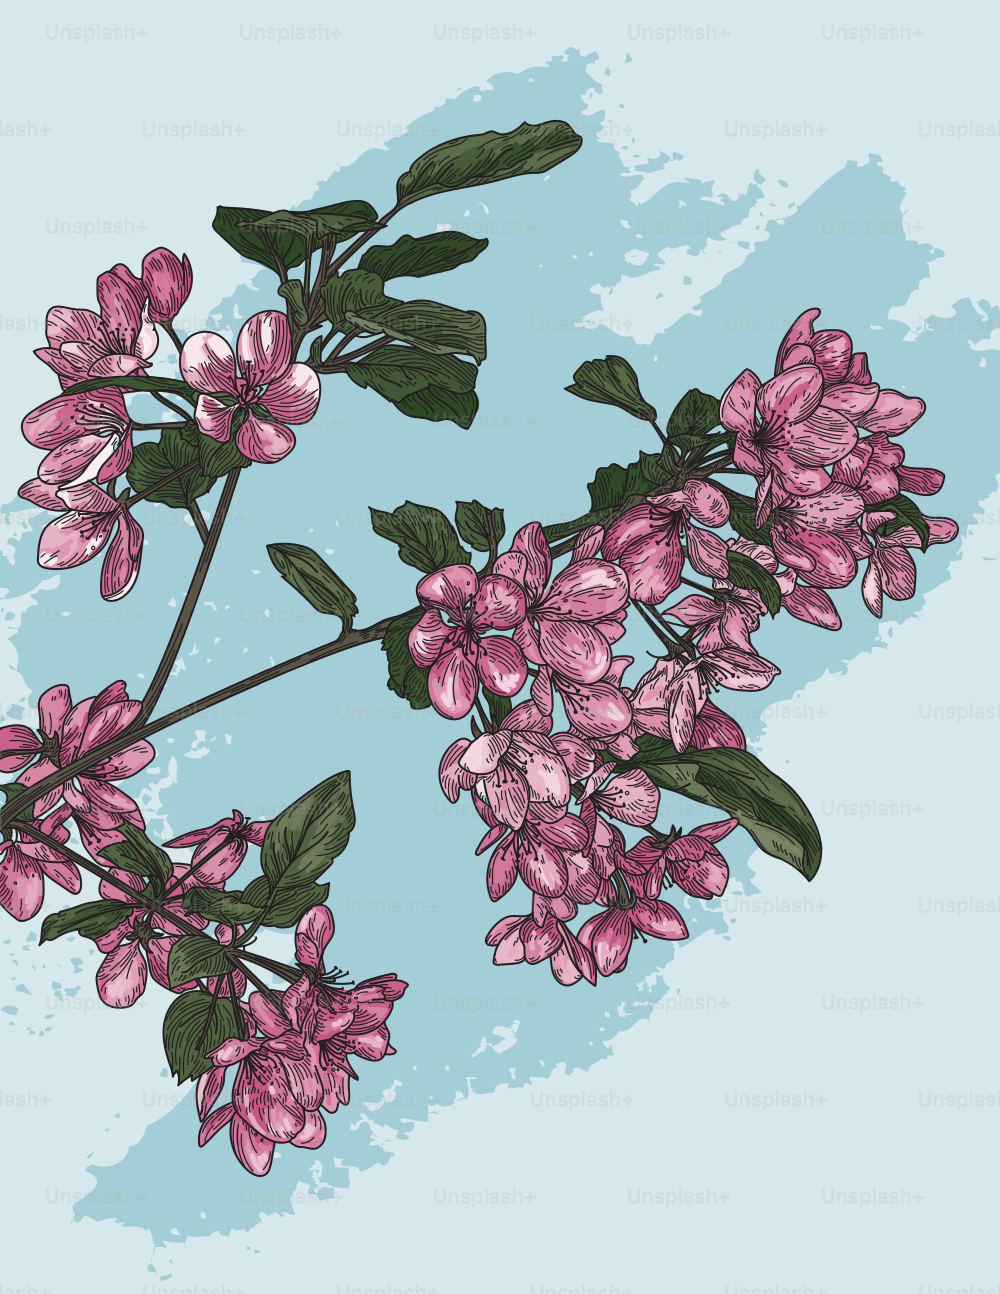 Illustrazione dettagliata di alcuni fiori su un ramo di un melo selvatico in fiore.